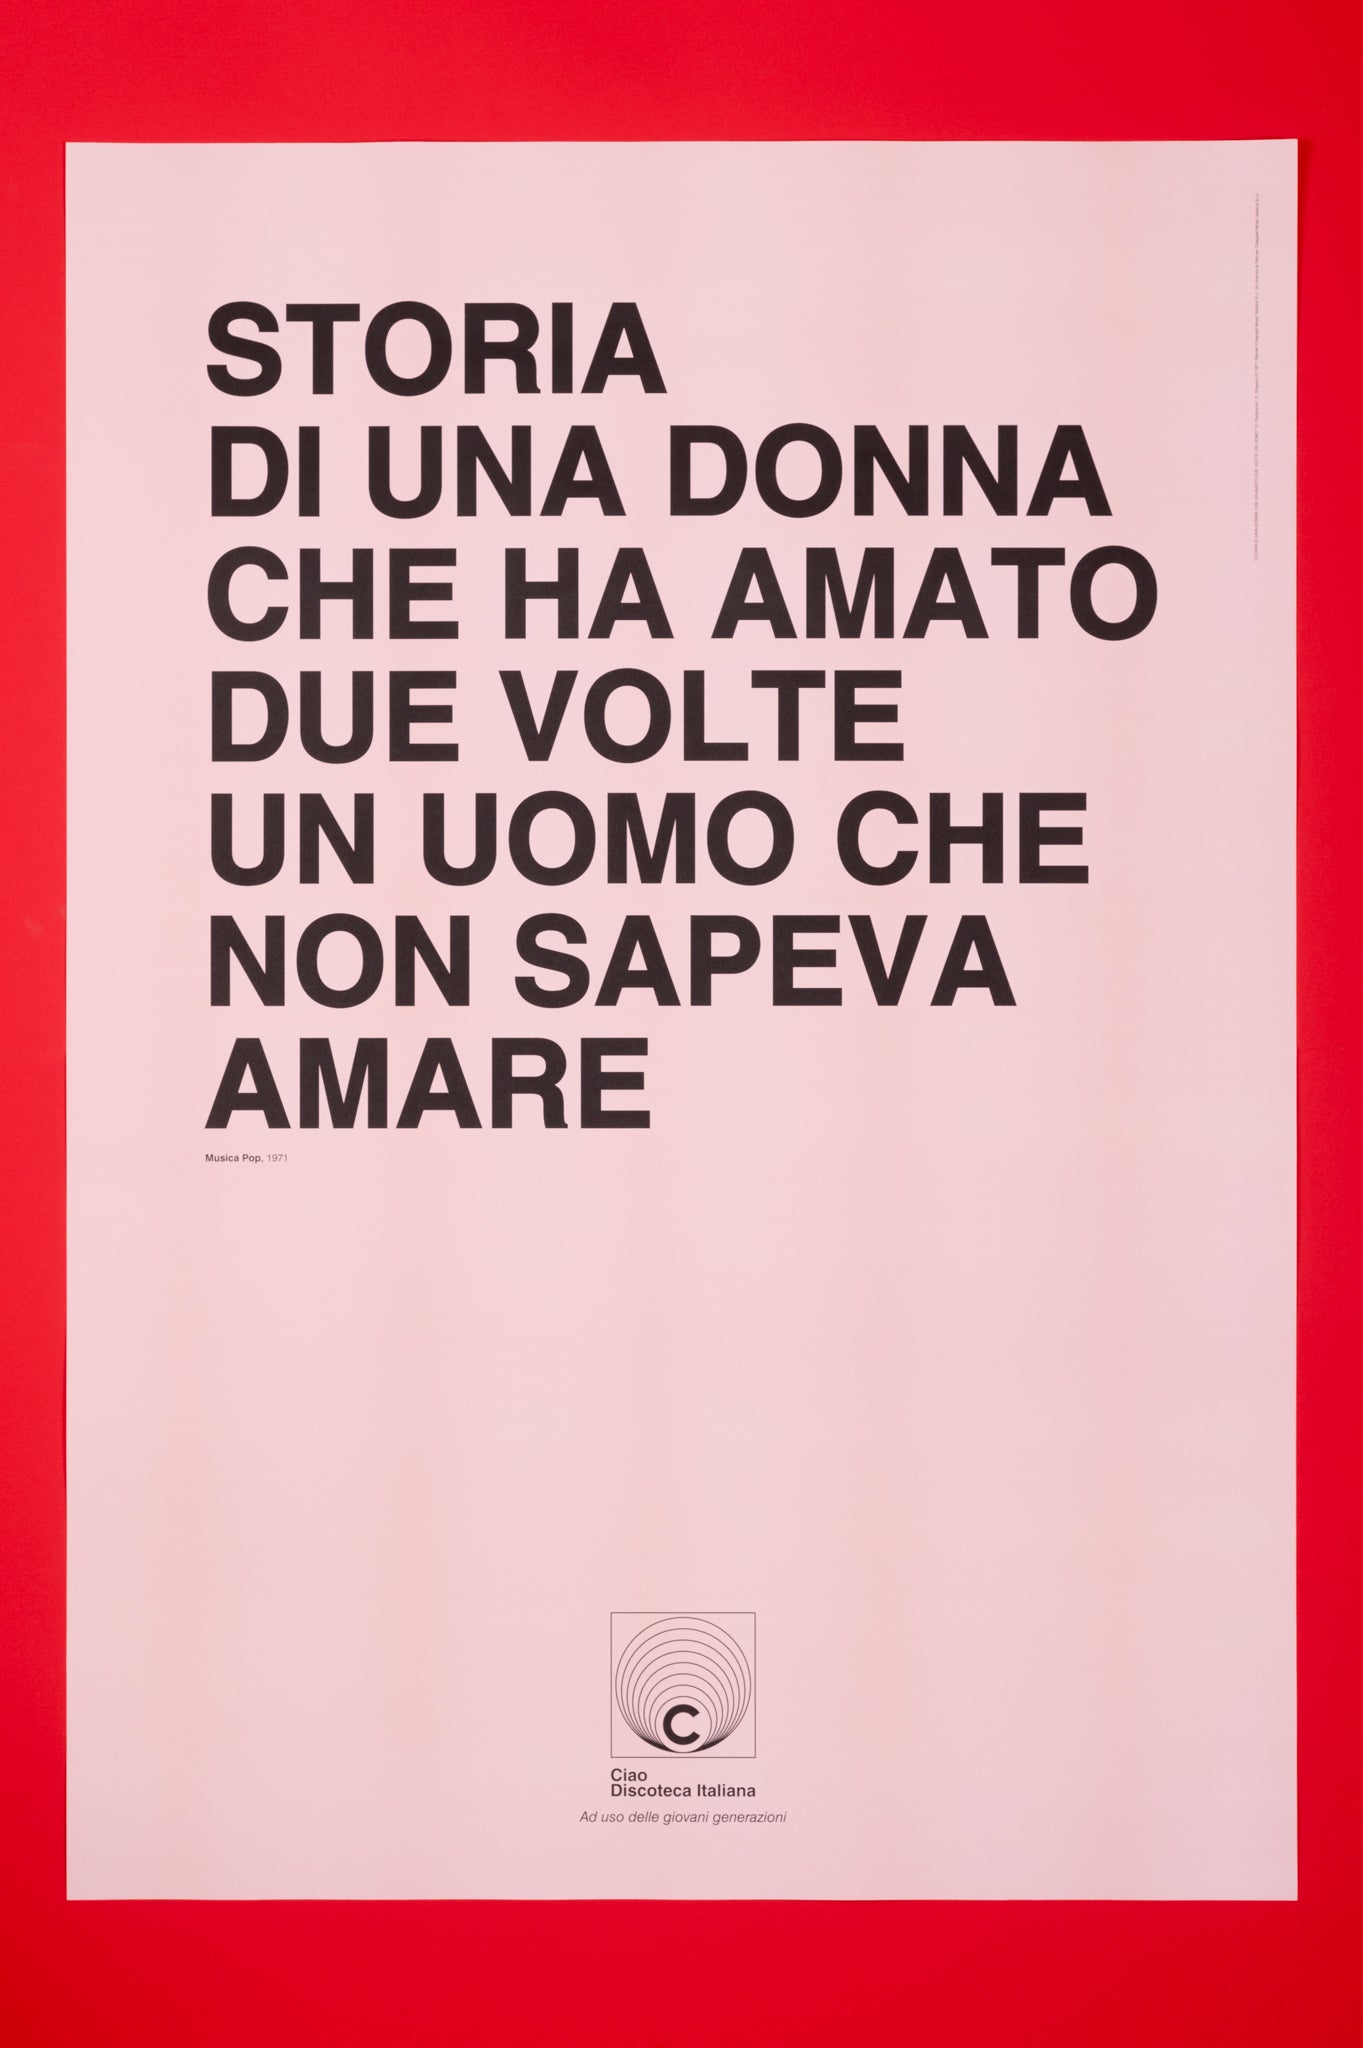 Poster Patty Pravo, Storia di una donna manifesto